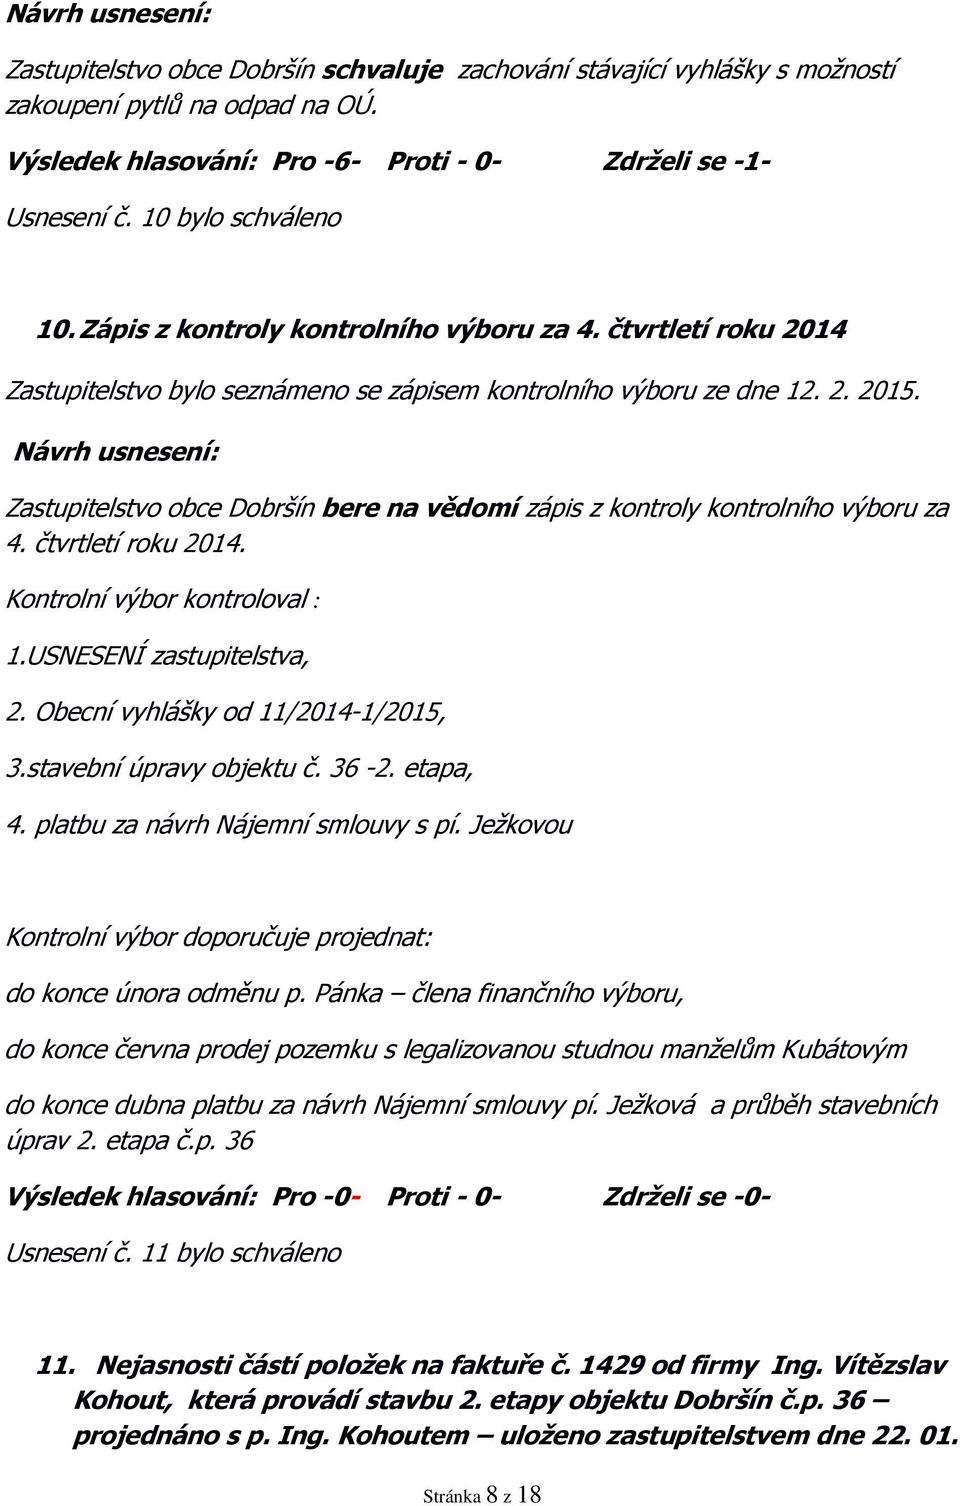 Zastupitelstvo obce Dobršín bere na vědomí zápis z kontroly kontrolního výboru za 4. čtvrtletí roku 2014. Kontrolní výbor kontroloval : 1.USNESENÍ zastupitelstva, 2.